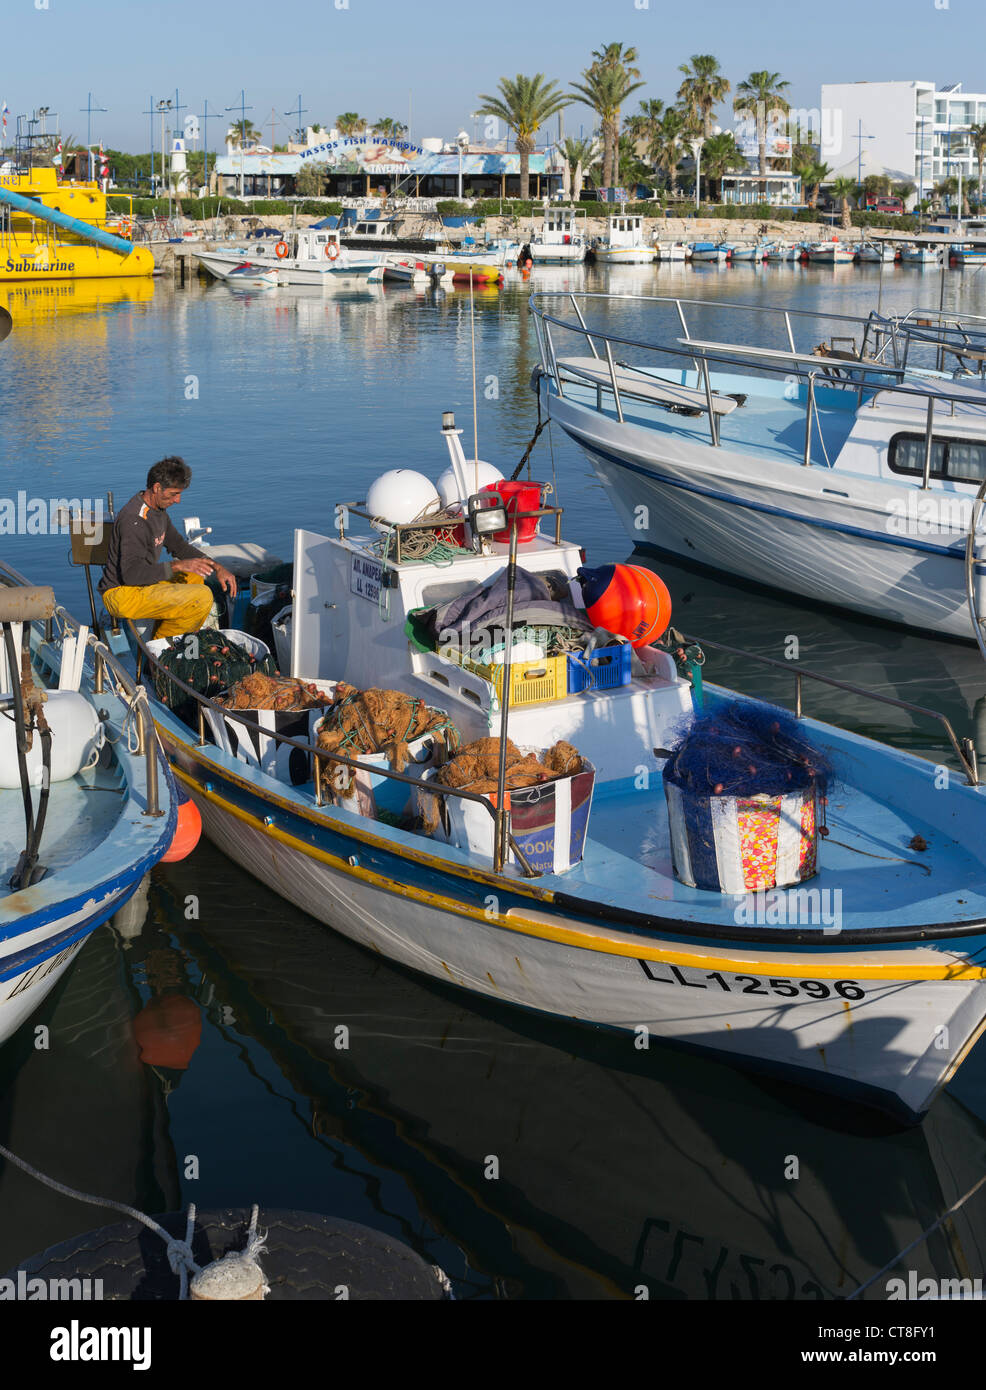 dh Grecia isla AYIA NAPA CHIPRE DEL SUR pescador chipriota del sur barco pesquero puerto pescadores gente Foto de stock